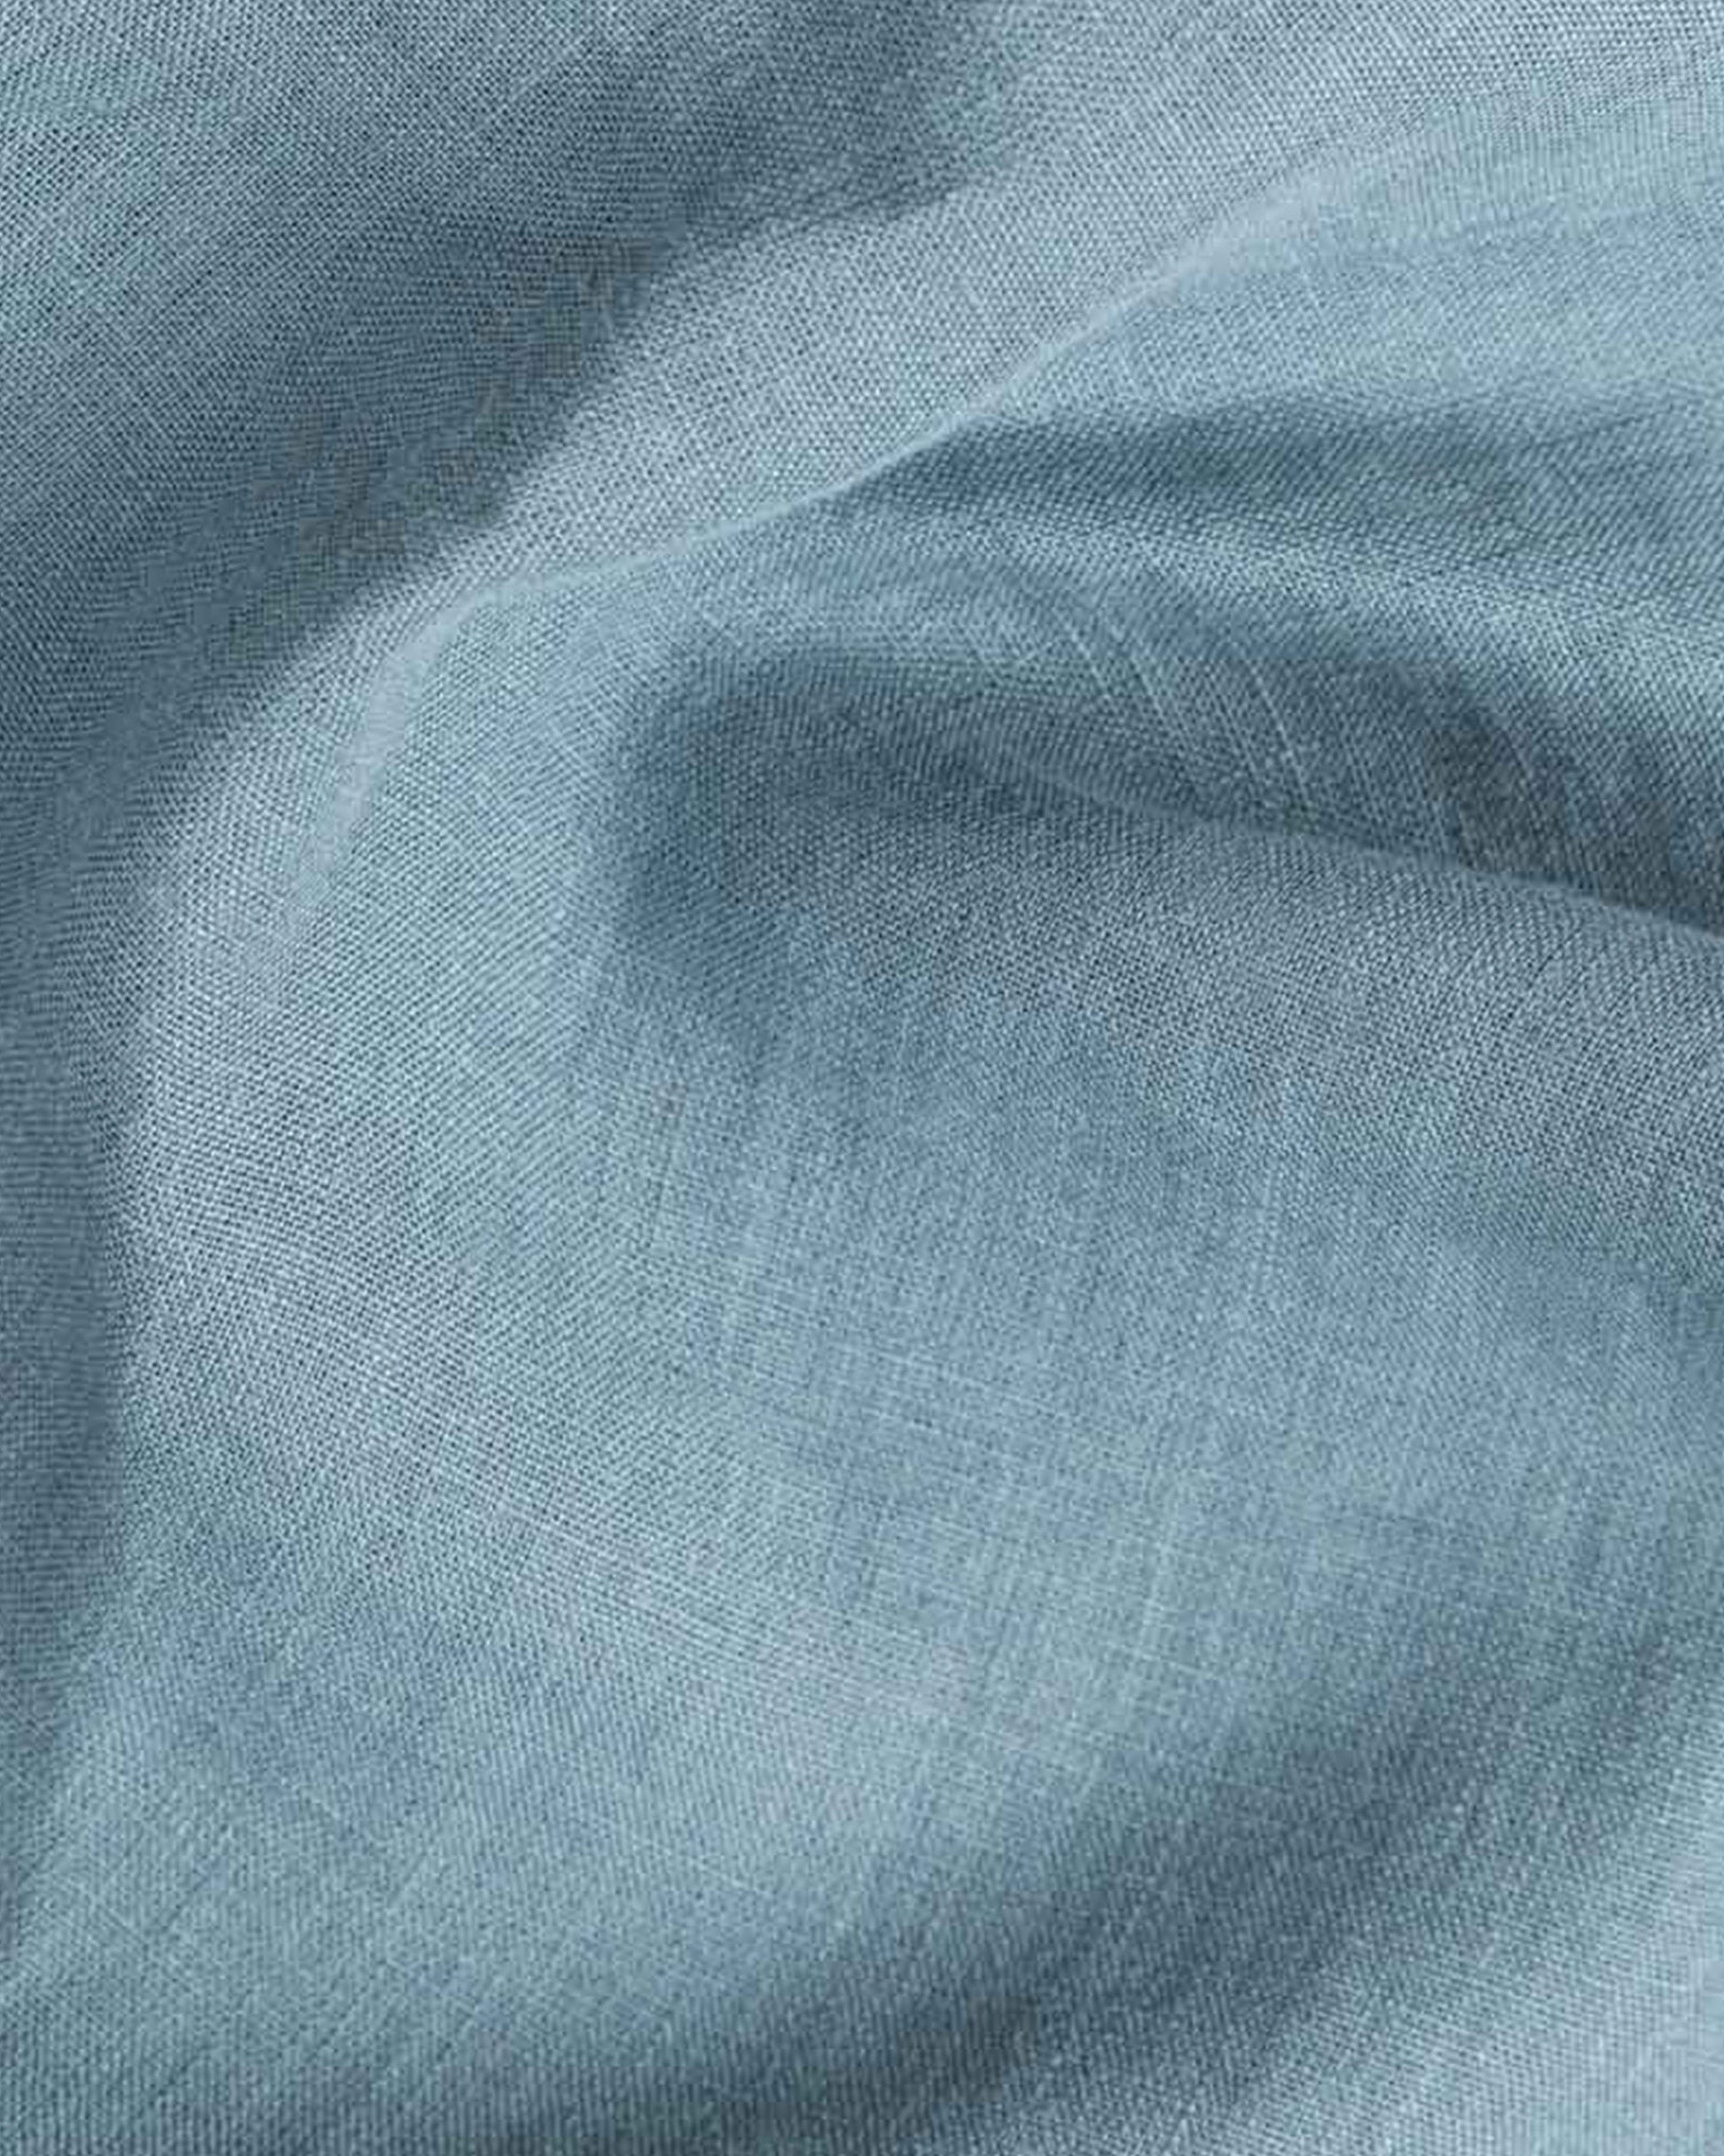 Custom size Gray blue linen flat sheet - MagicLinen